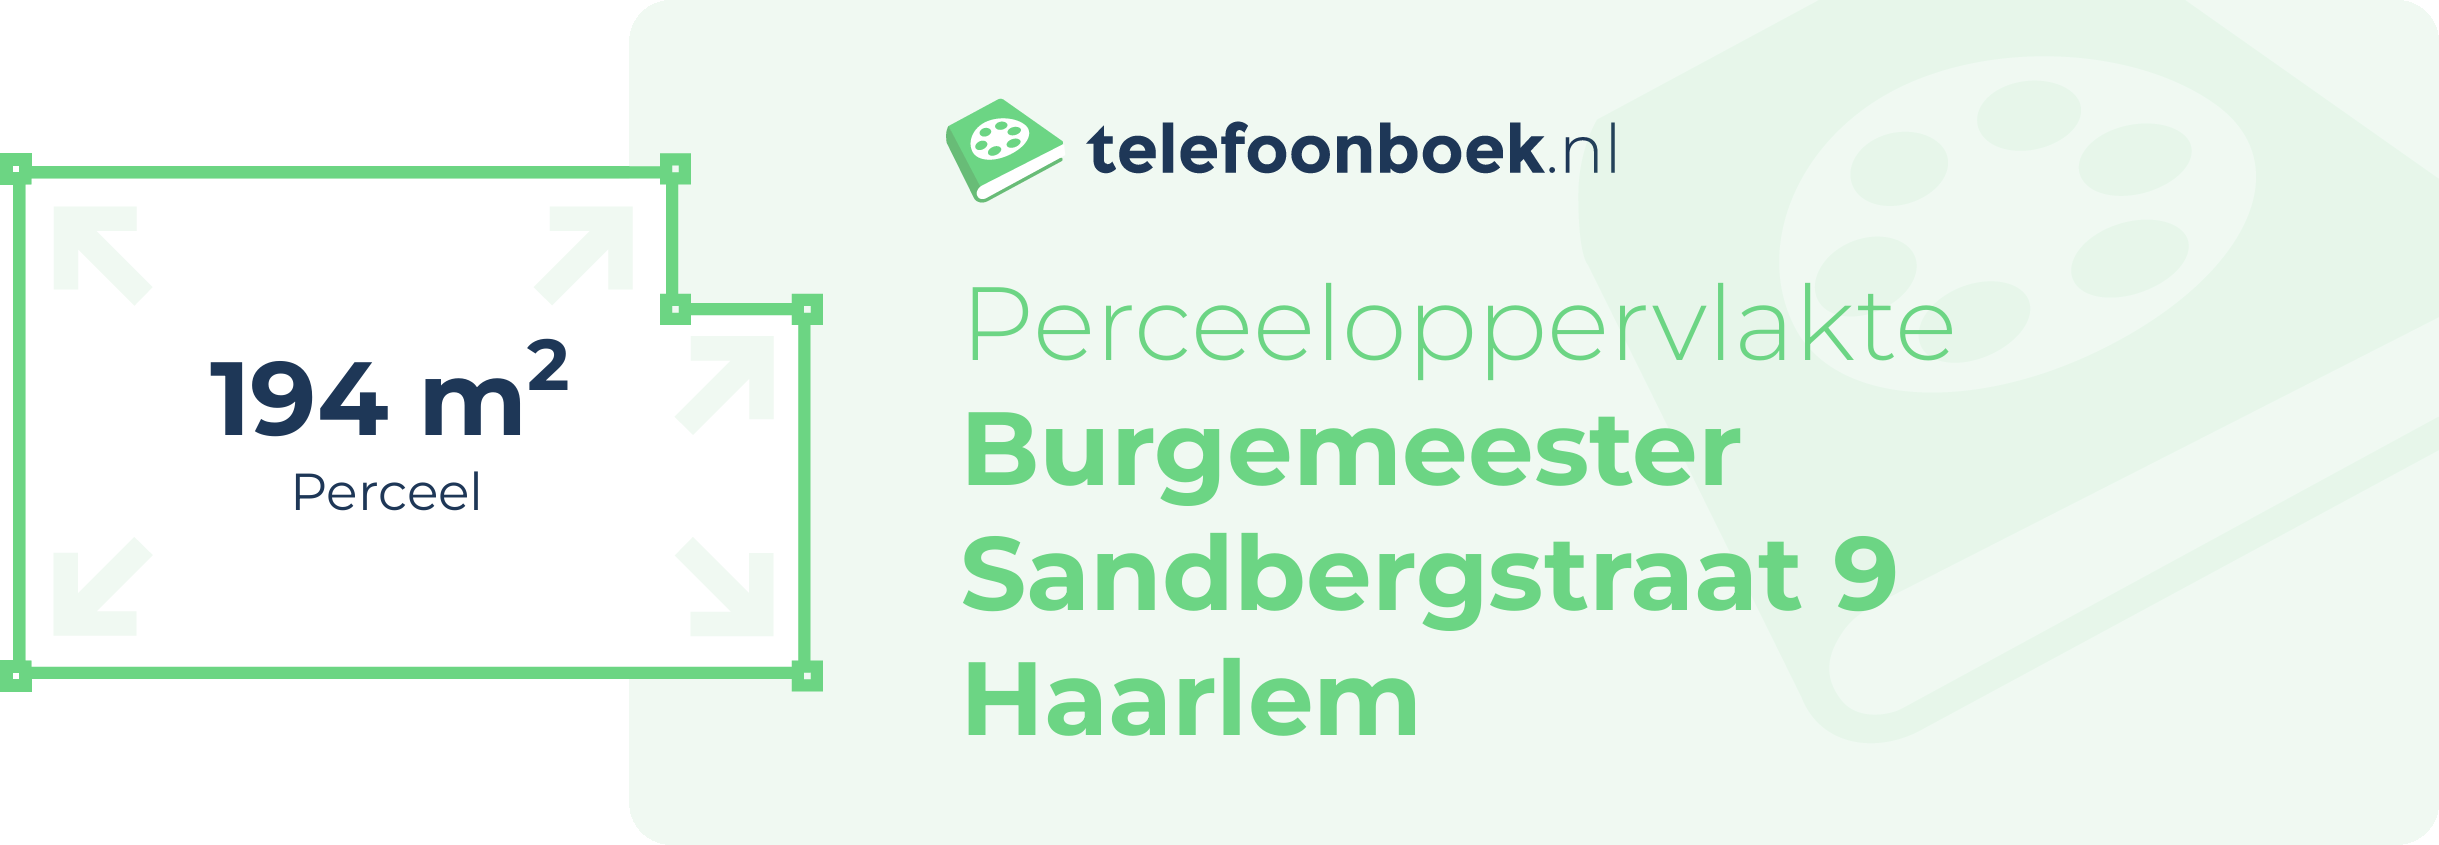 Perceeloppervlakte Burgemeester Sandbergstraat 9 Haarlem